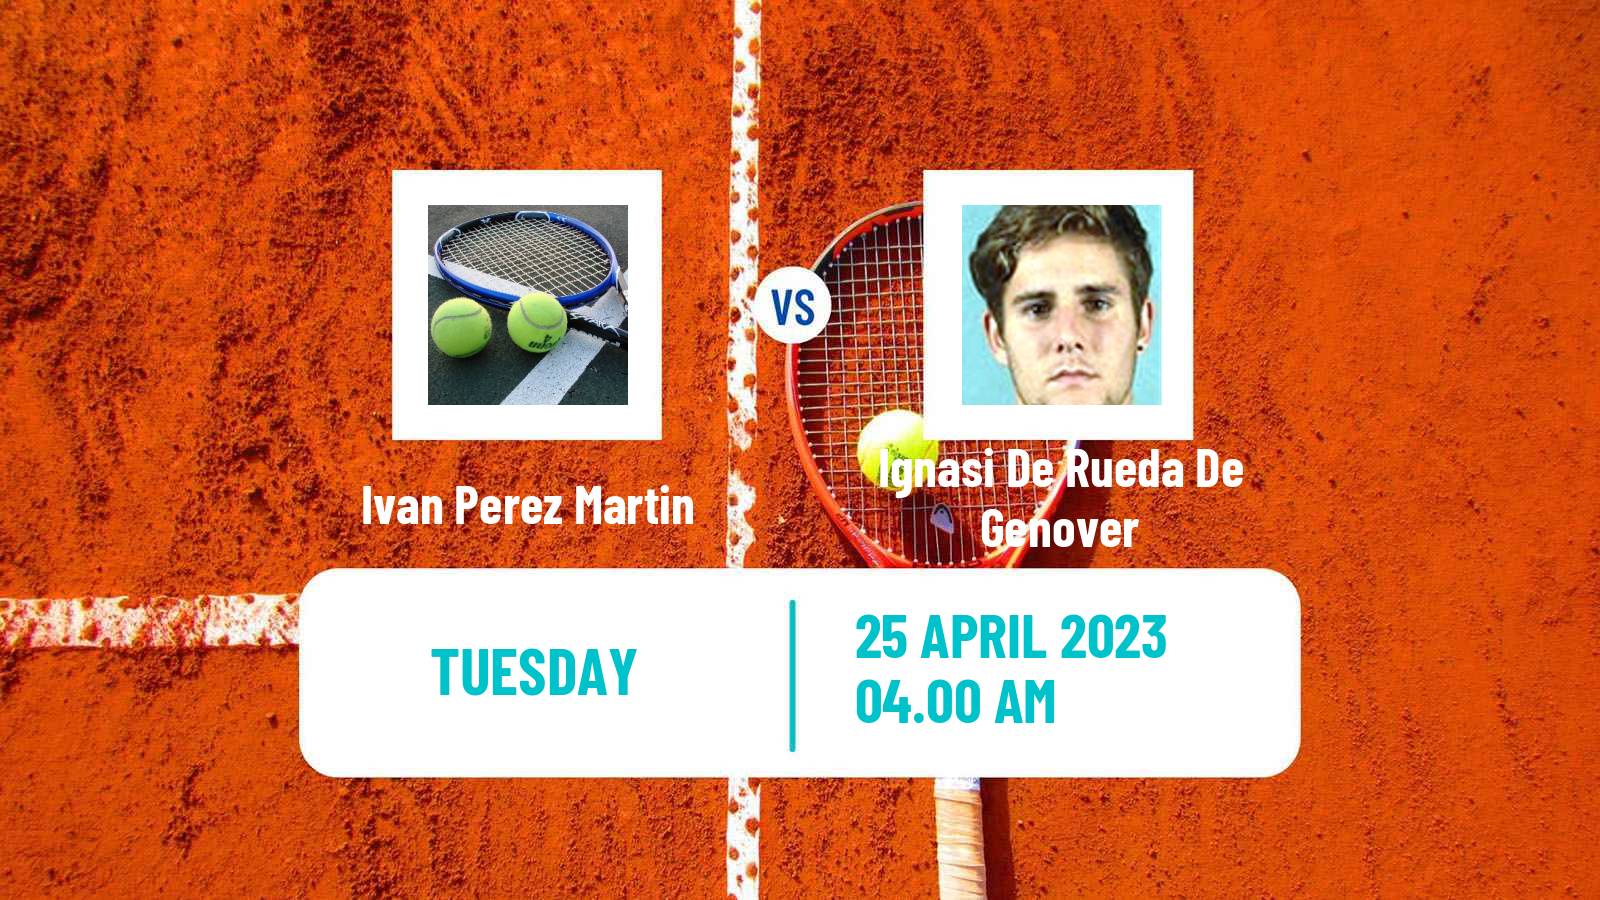 Tennis ITF Tournaments Ivan Perez Martin - Ignasi De Rueda De Genover